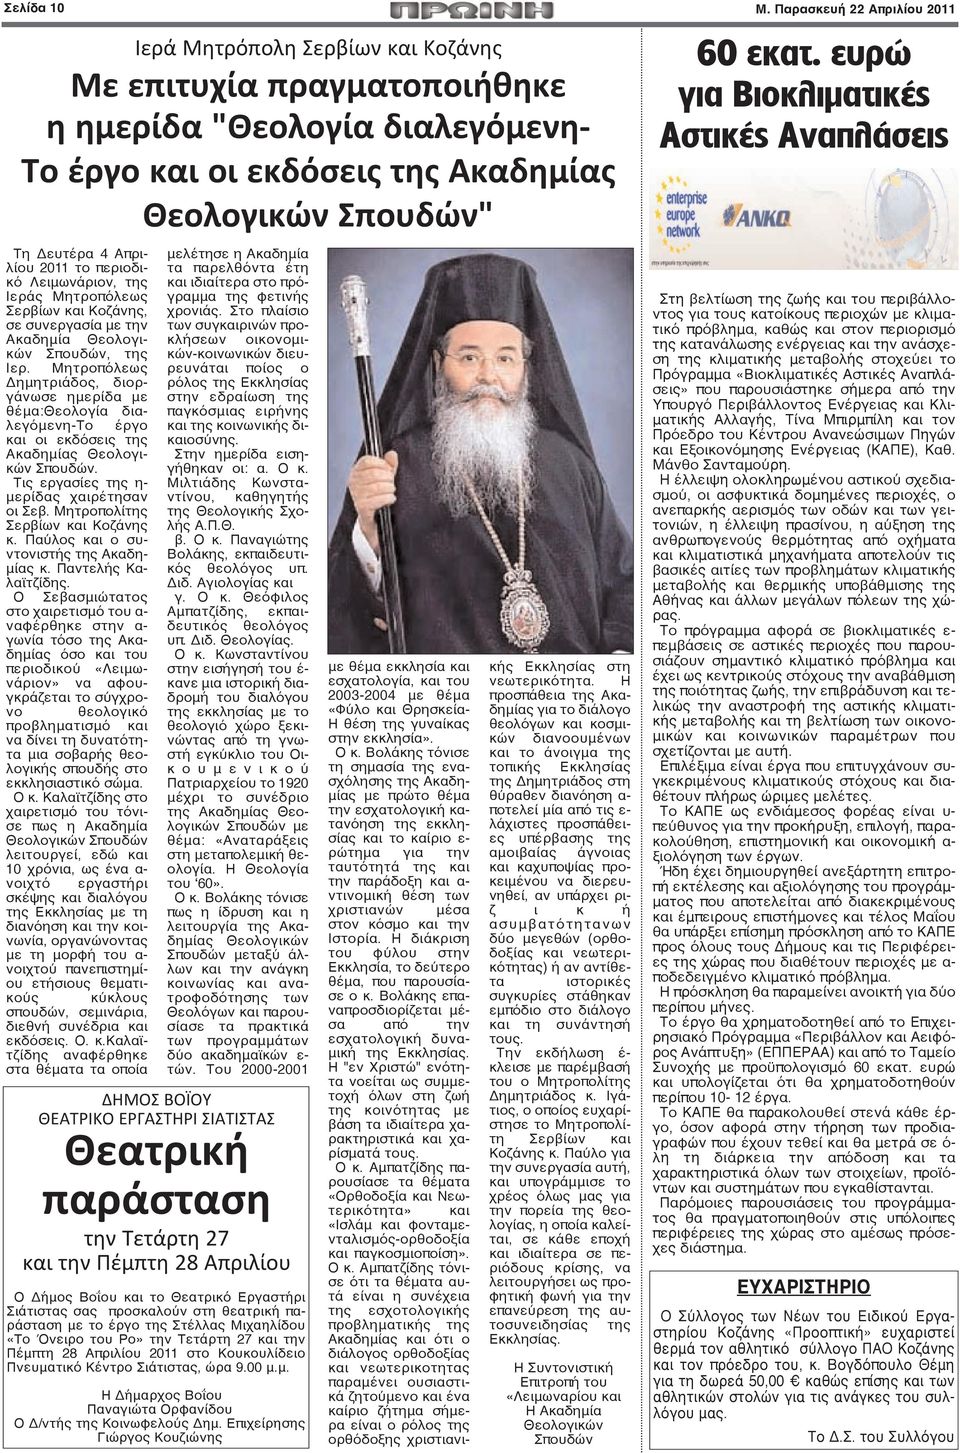 Απριλίου 2011 το περιοδικό Λειμωνάριον, της Ιεράς Μητροπόλεως Σερβίων και Κοζάνης, σε συνεργασία με την Ακαδημία Θεολογικών Σπουδών, της Ιερ.